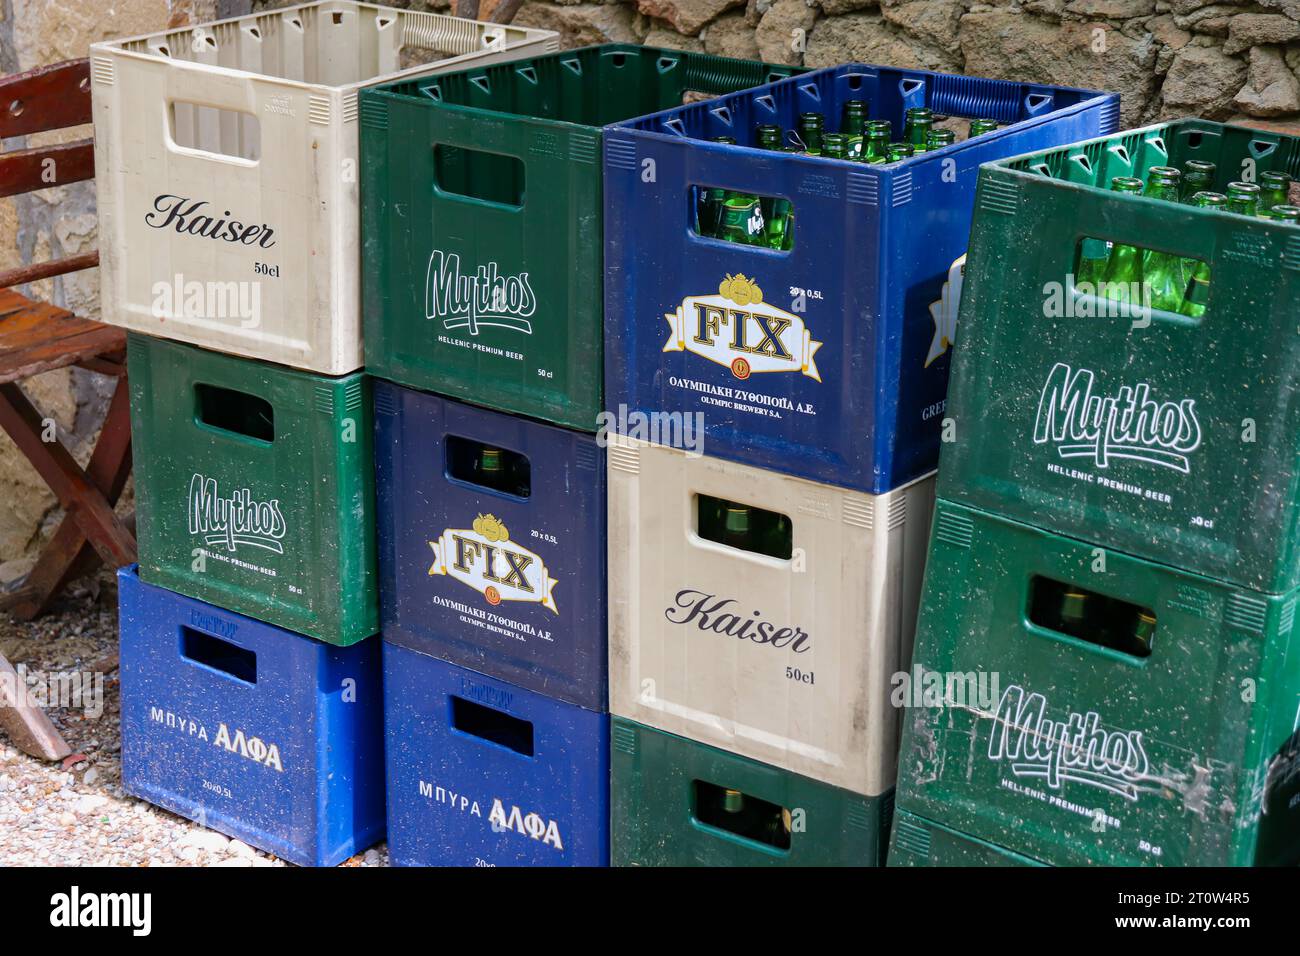 Griechische Biermarken mit offenen und leeren Glasflaschen. Mythos-Bier, Fix-Bier und Kaiser-Pilsner-Bier Stockfoto